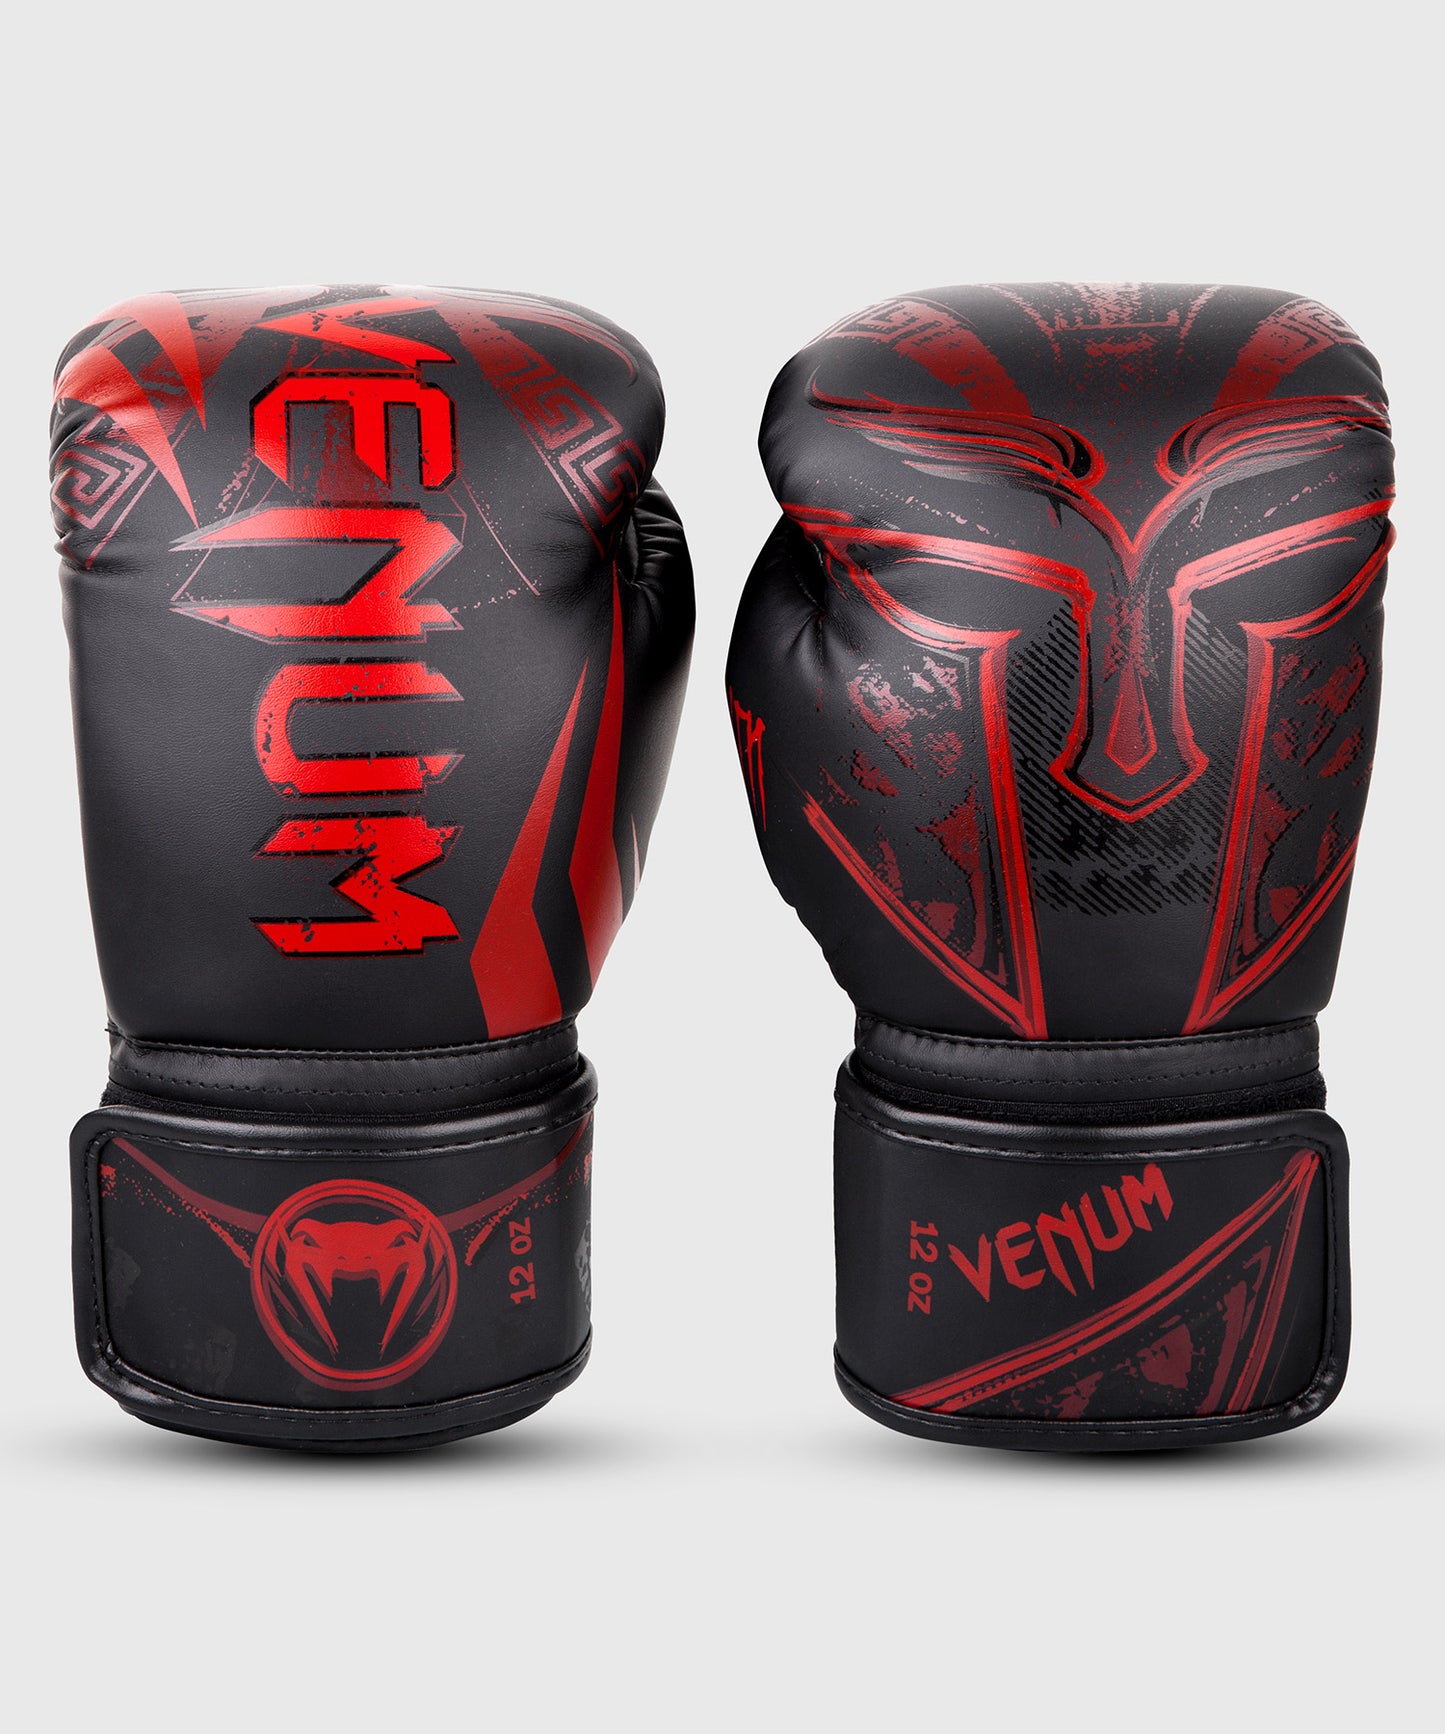 Venum Gladiator 3.0 Boxhandschuhe - Schwarz/Rot